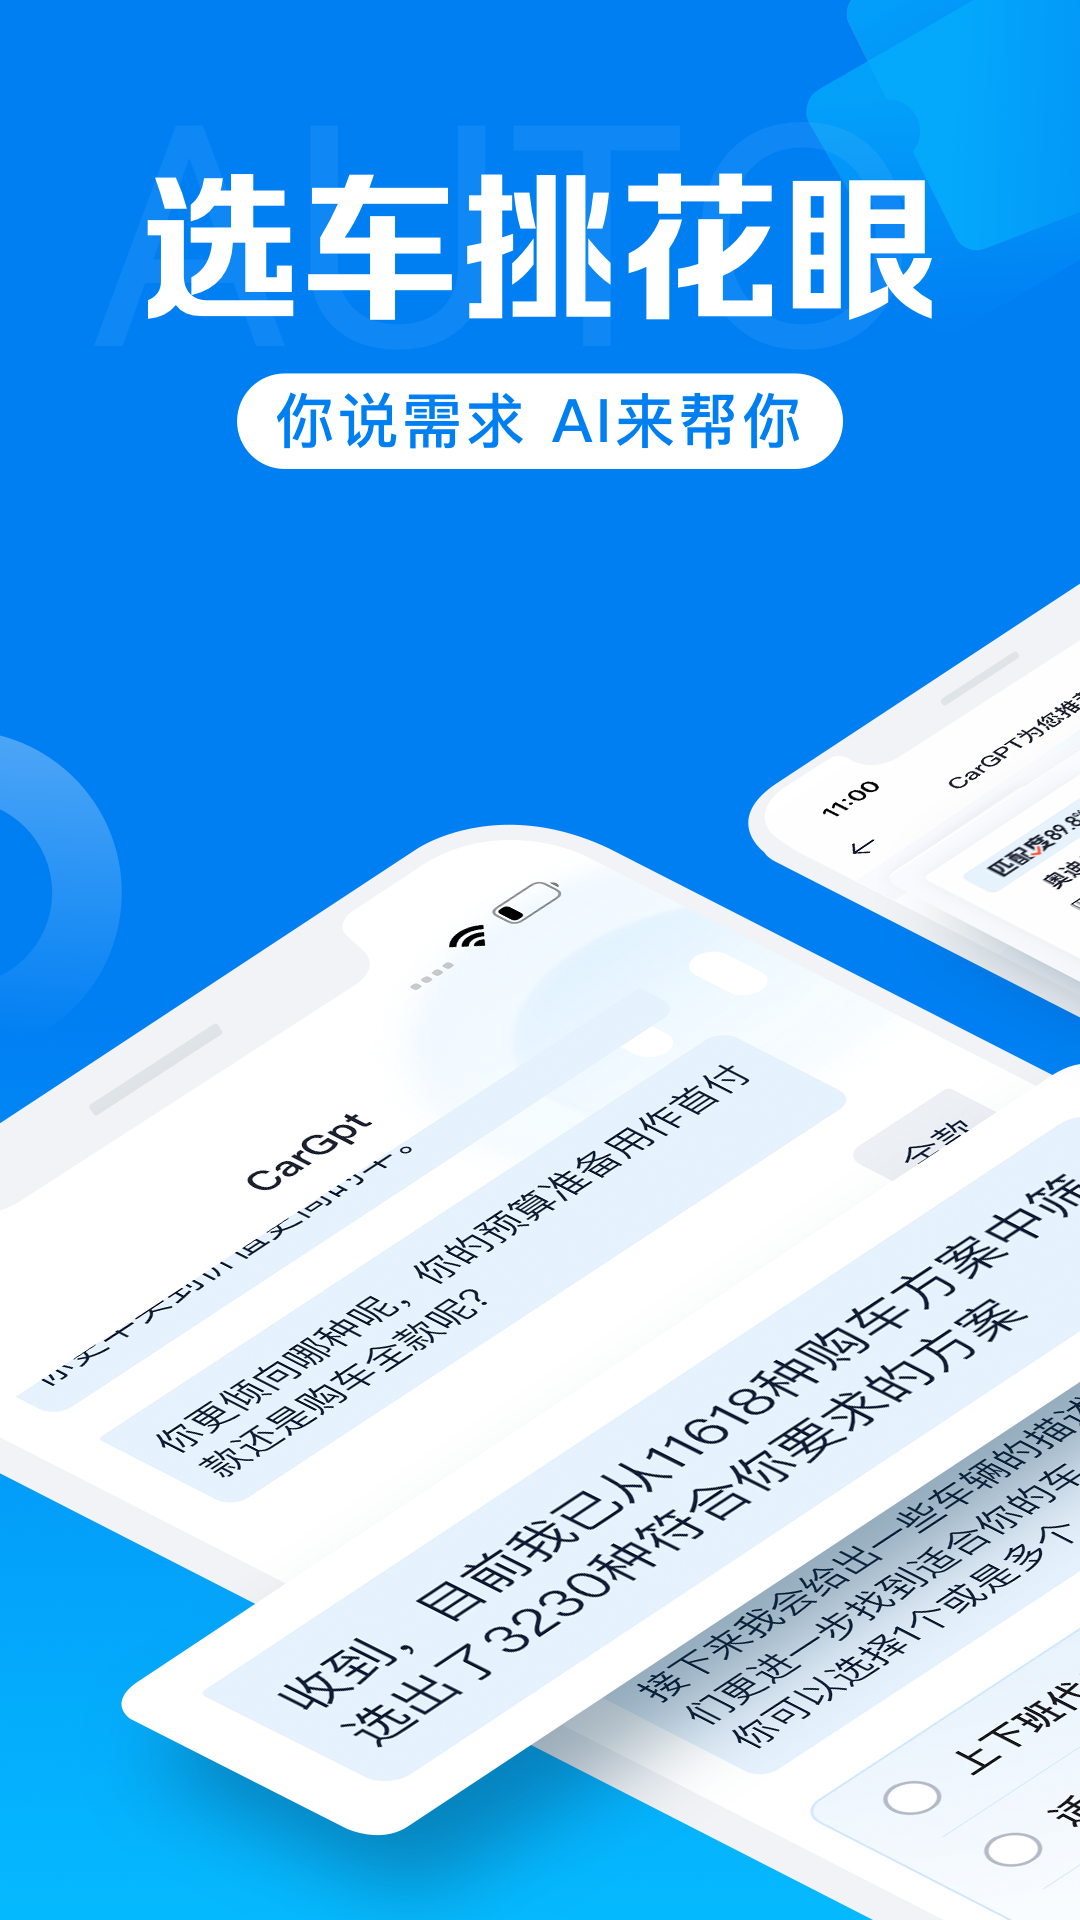 汽车报价大全官方新版本-安卓iOS版下载-应用宝官网